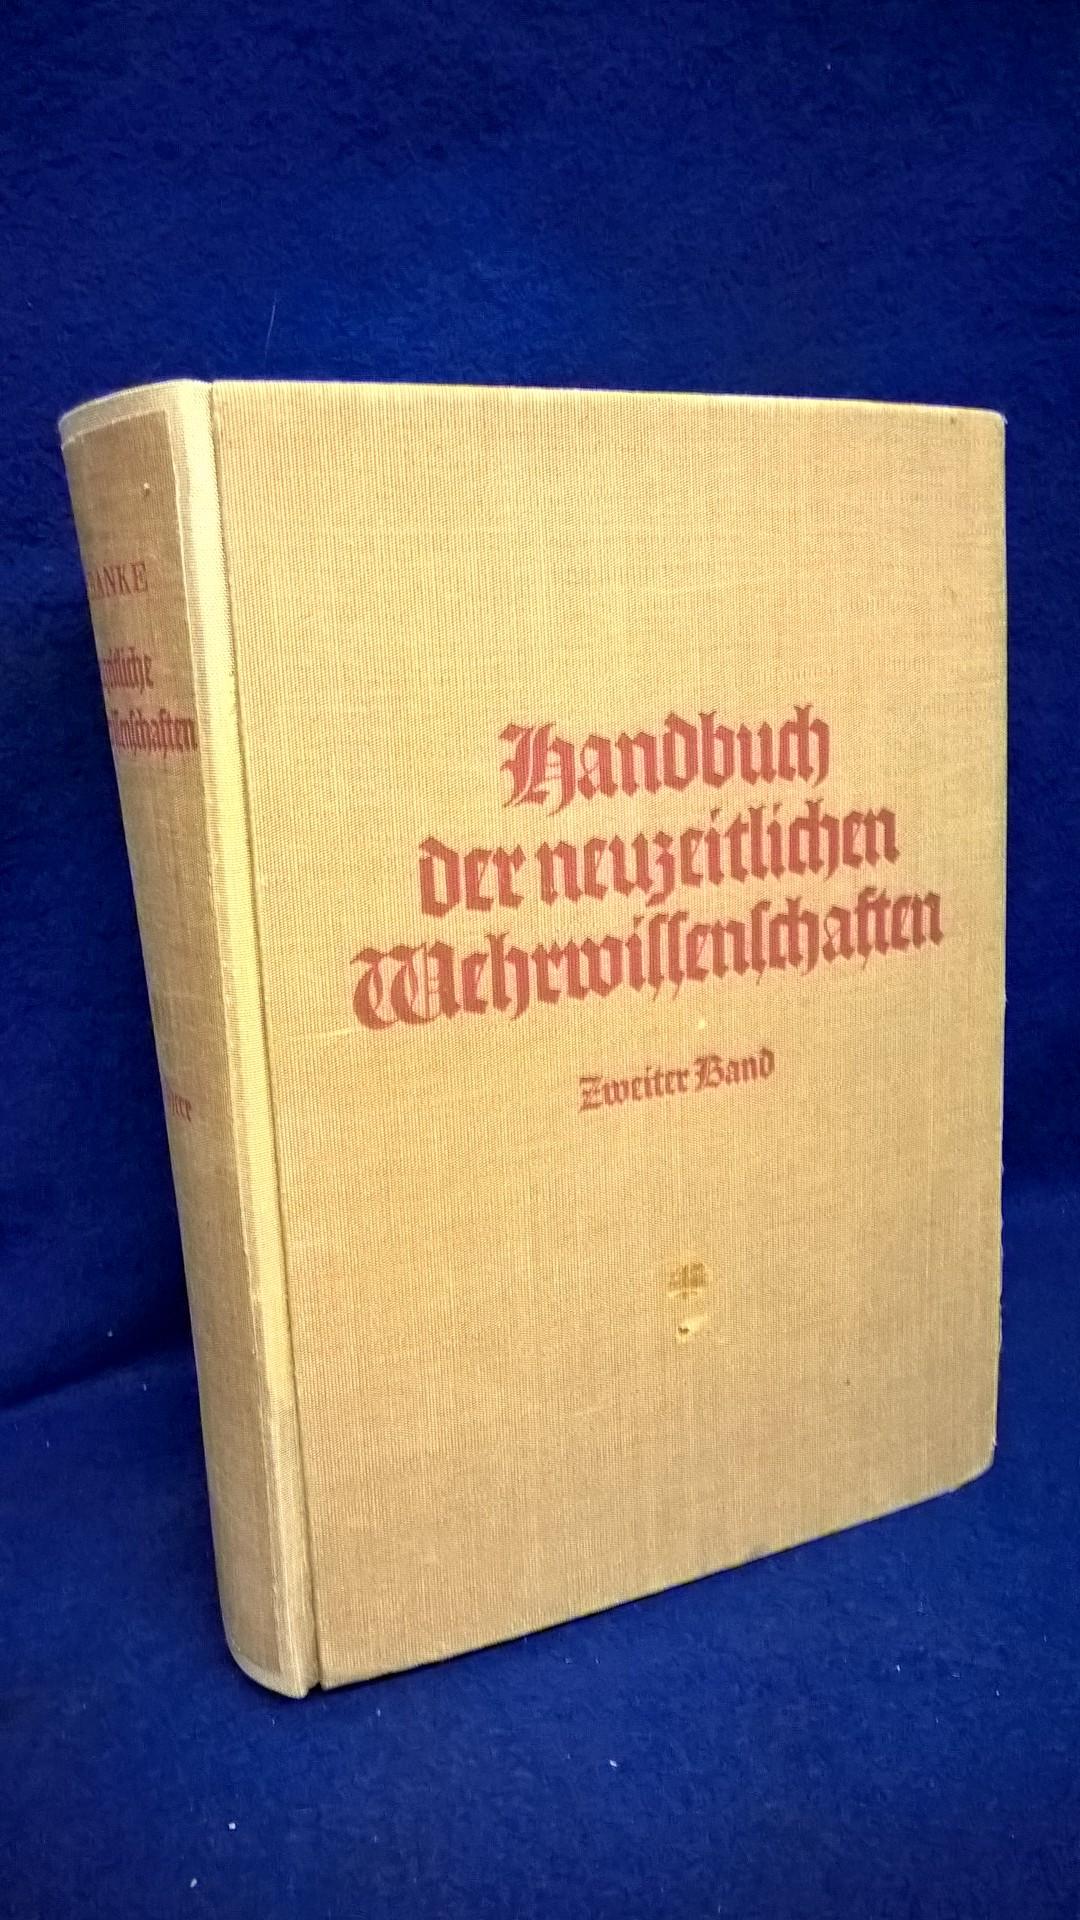 Handbuch der neuzeitlichen Wehrwissenschaften. 2. Band: Das Heer